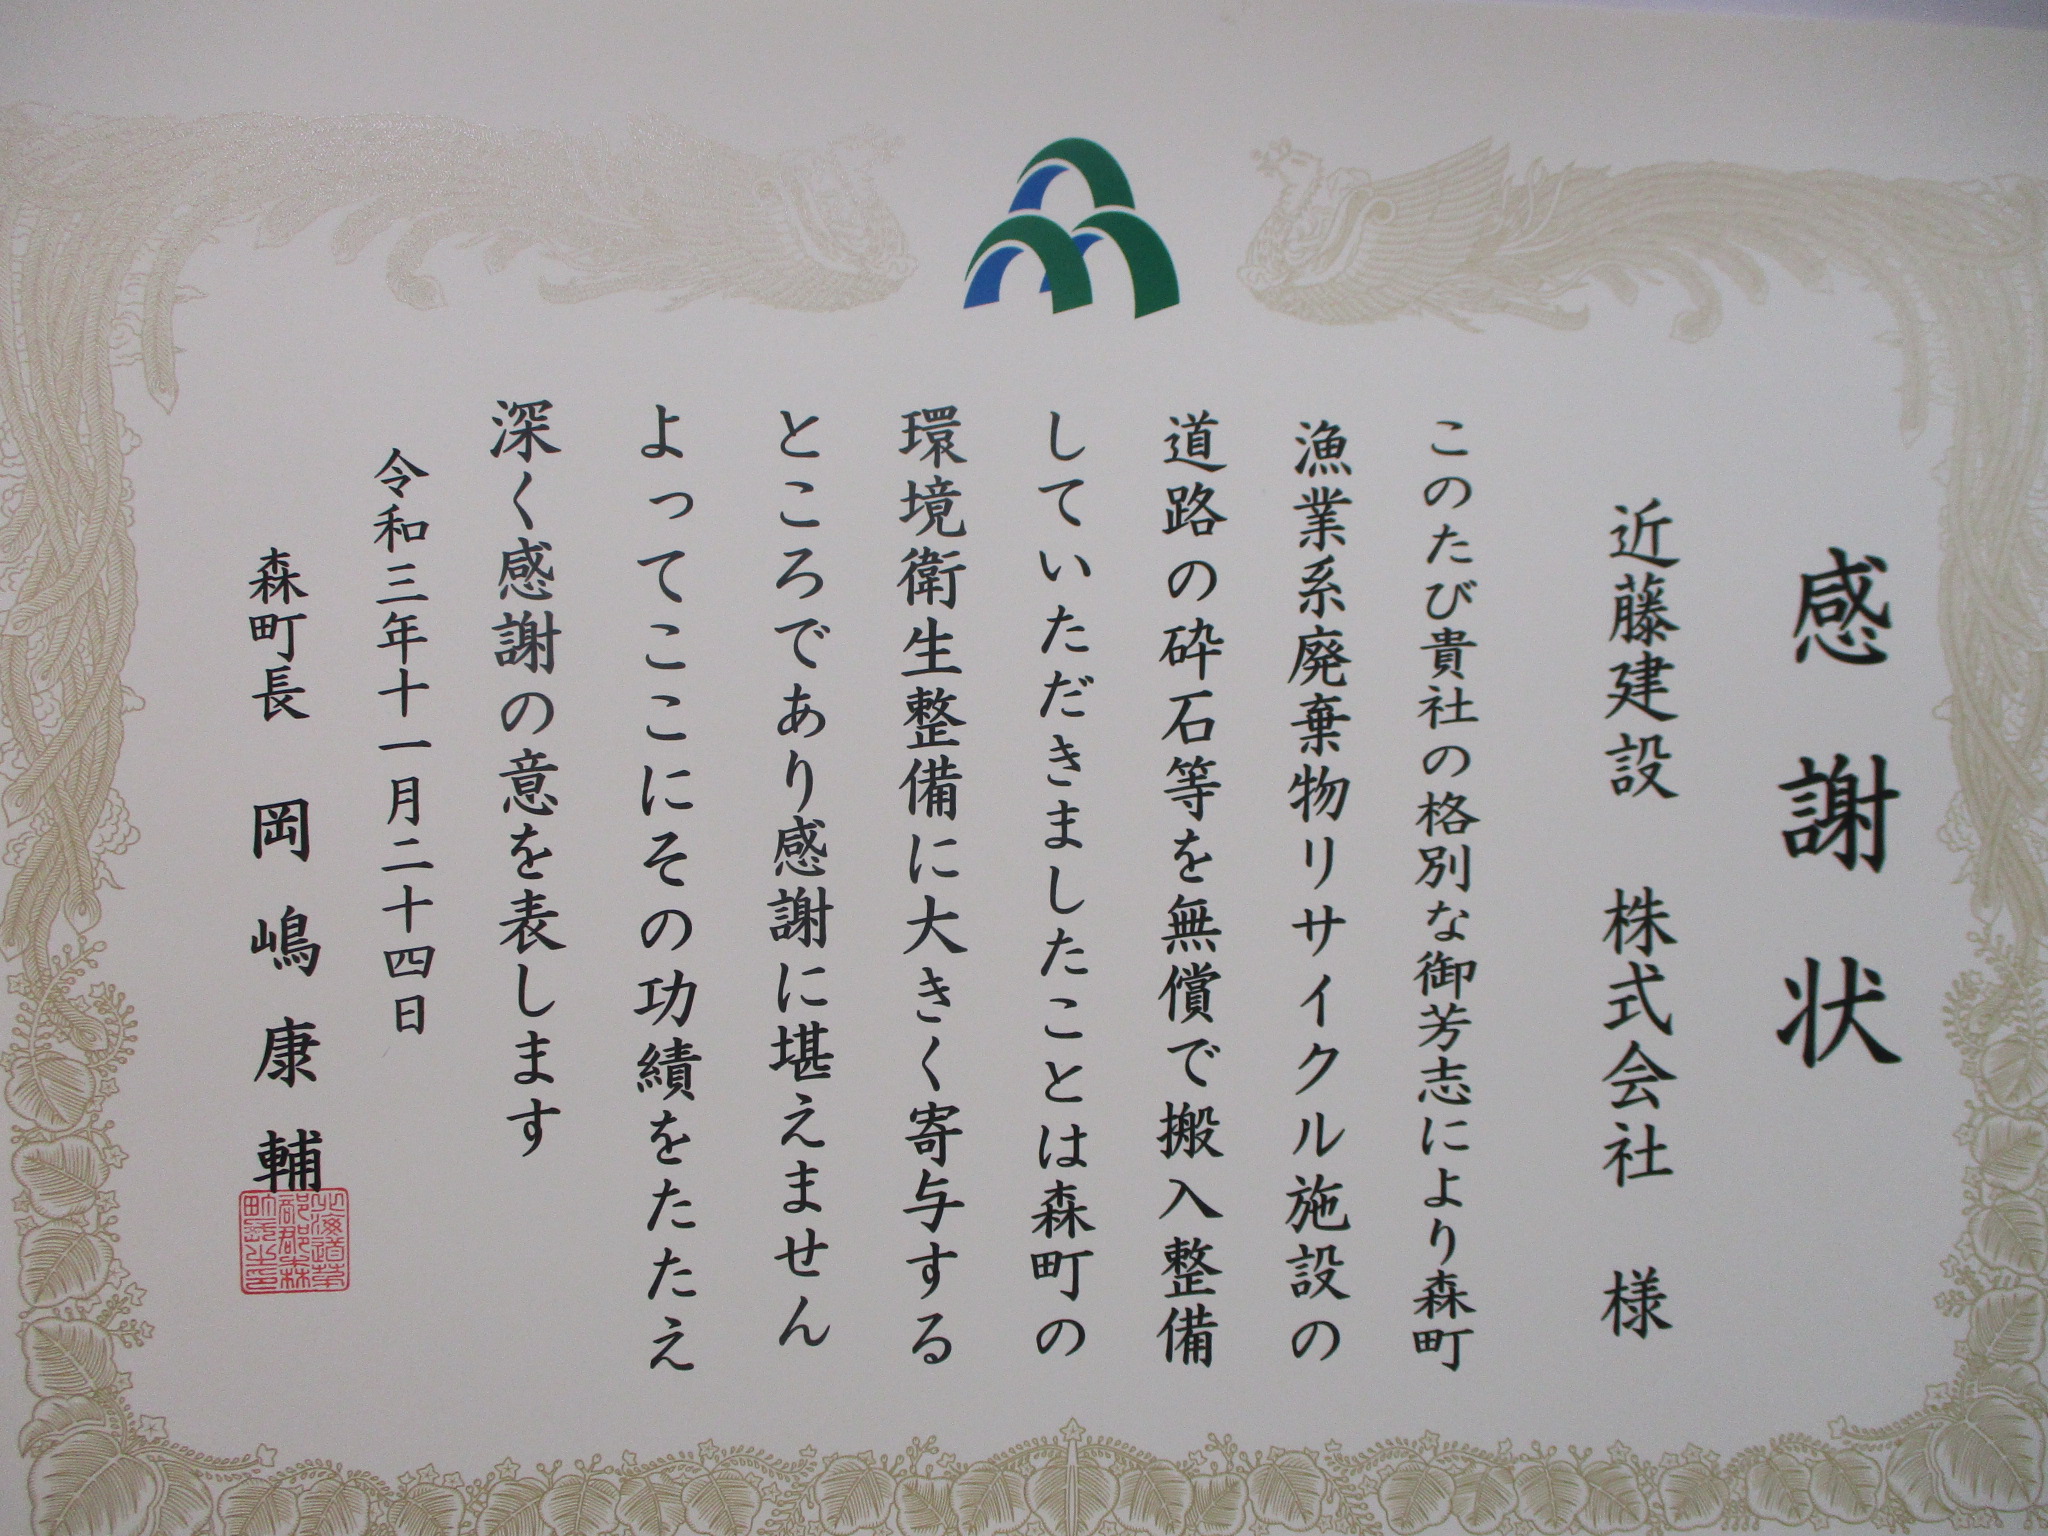 令和3年11月24日(水)森町より感謝状を頂きました。